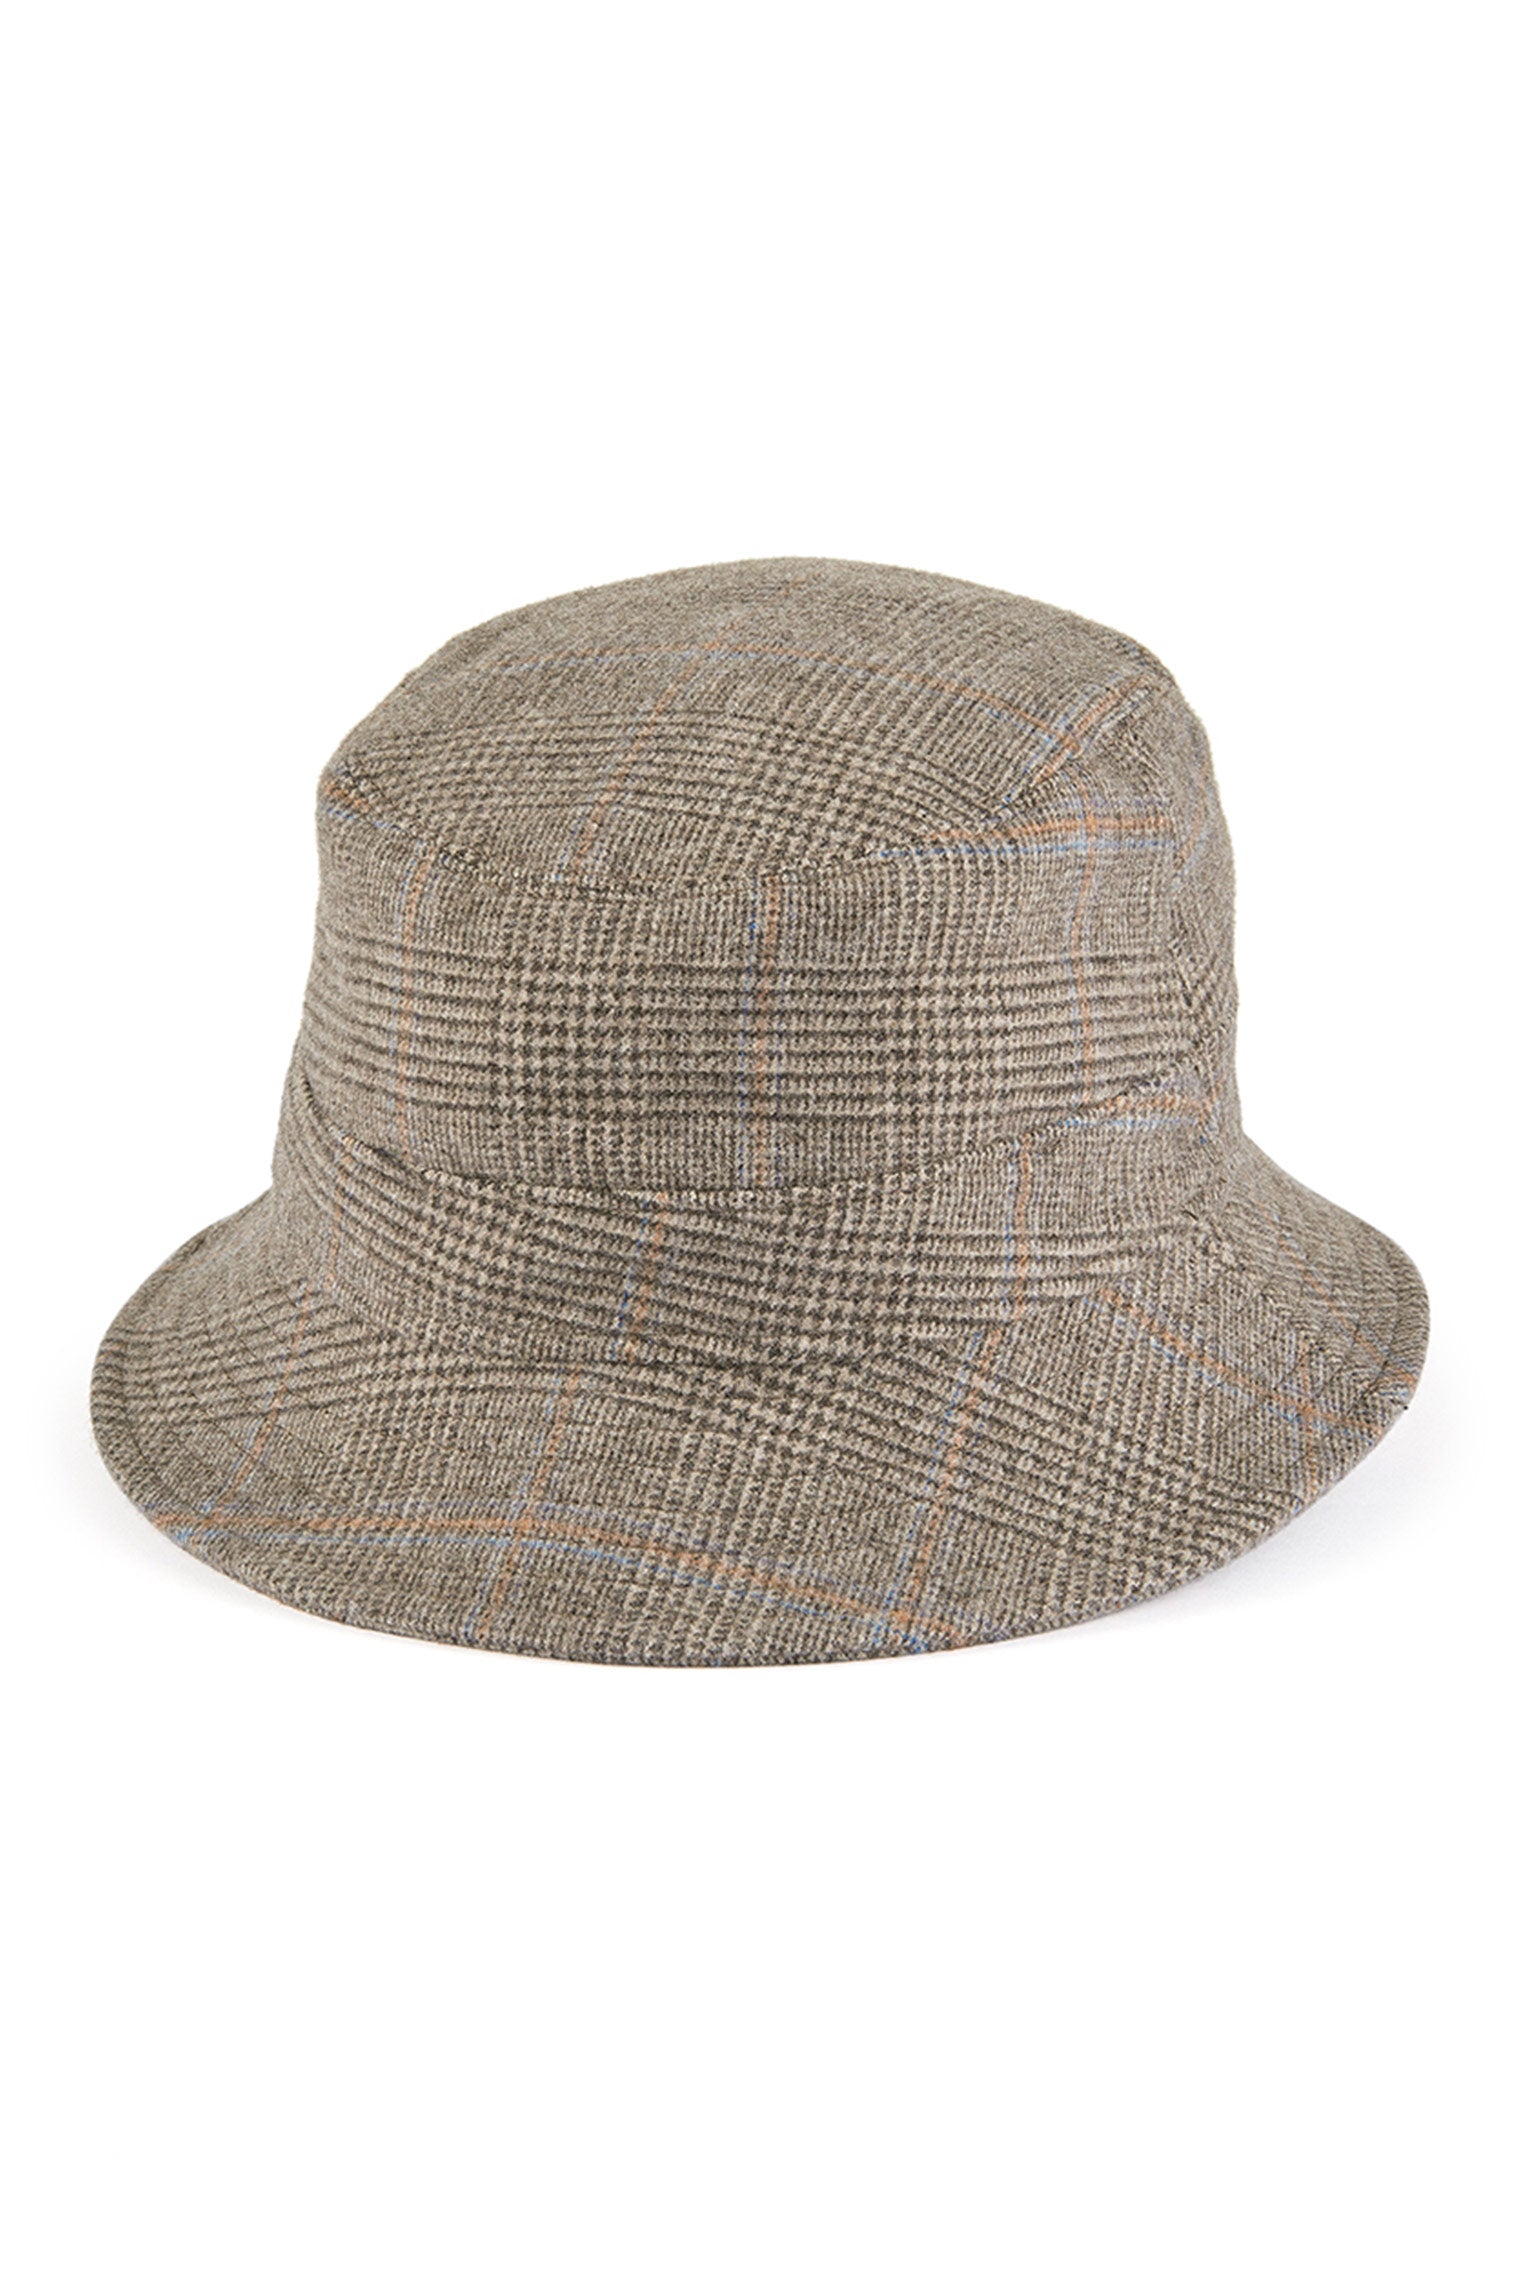 Escorial Wool Bucket Hat - Products - Lock & Co. Hatters London UK